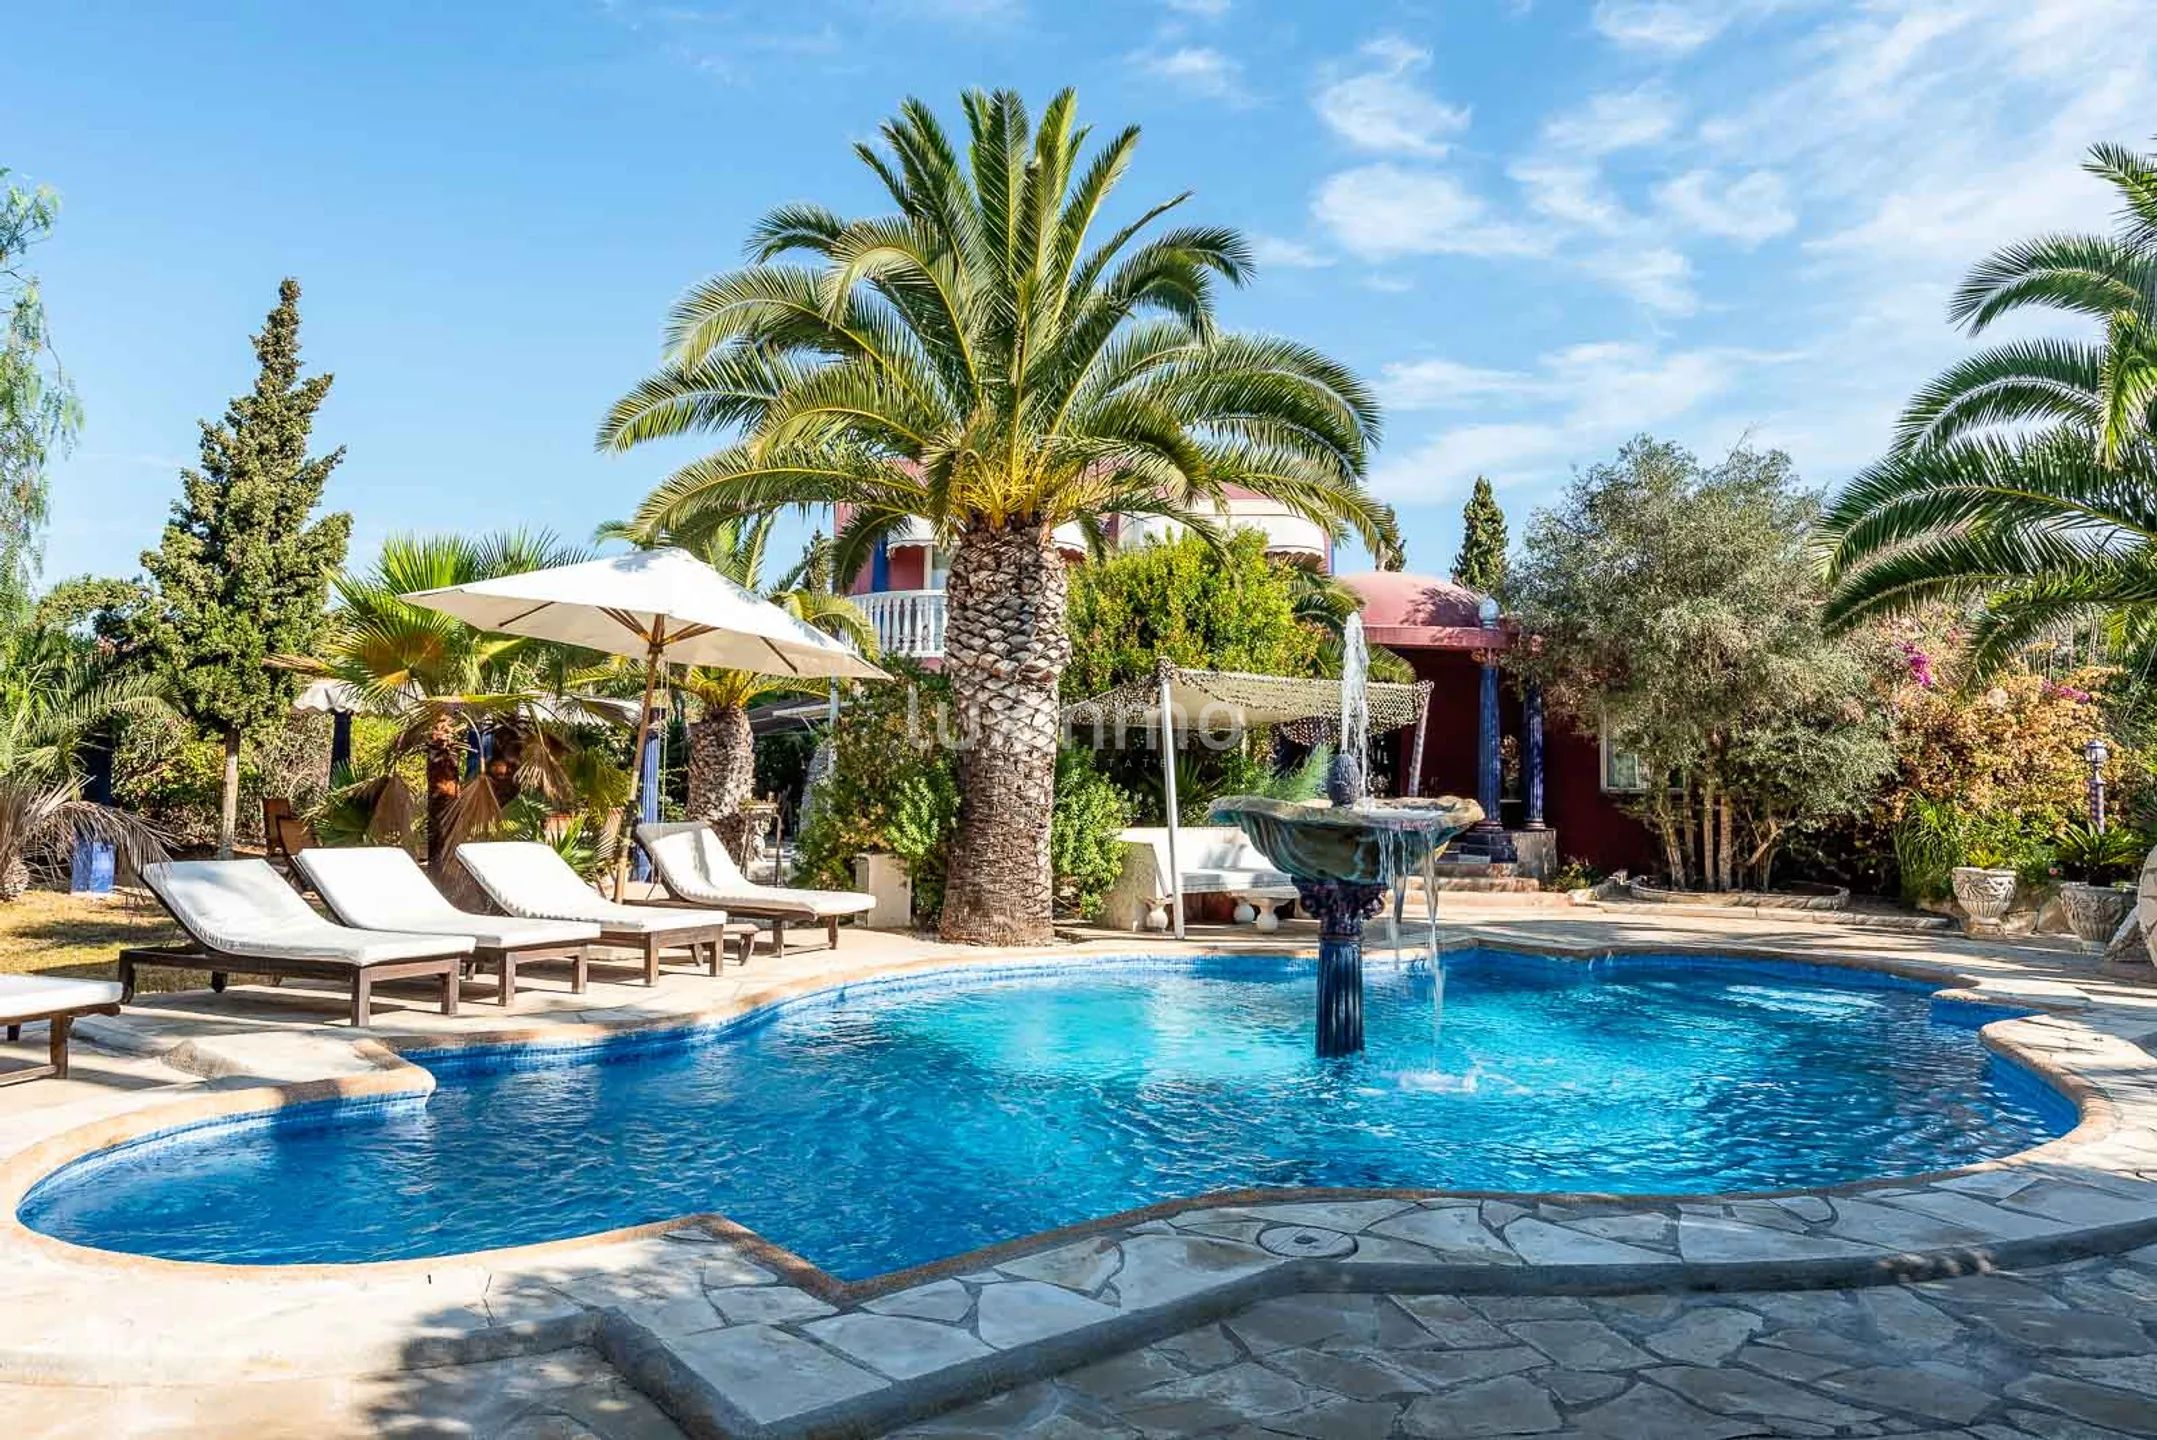 Villa Aladin : Villa authentique de style arabe avec jardin tropical à Sant Jordi, Ibiza